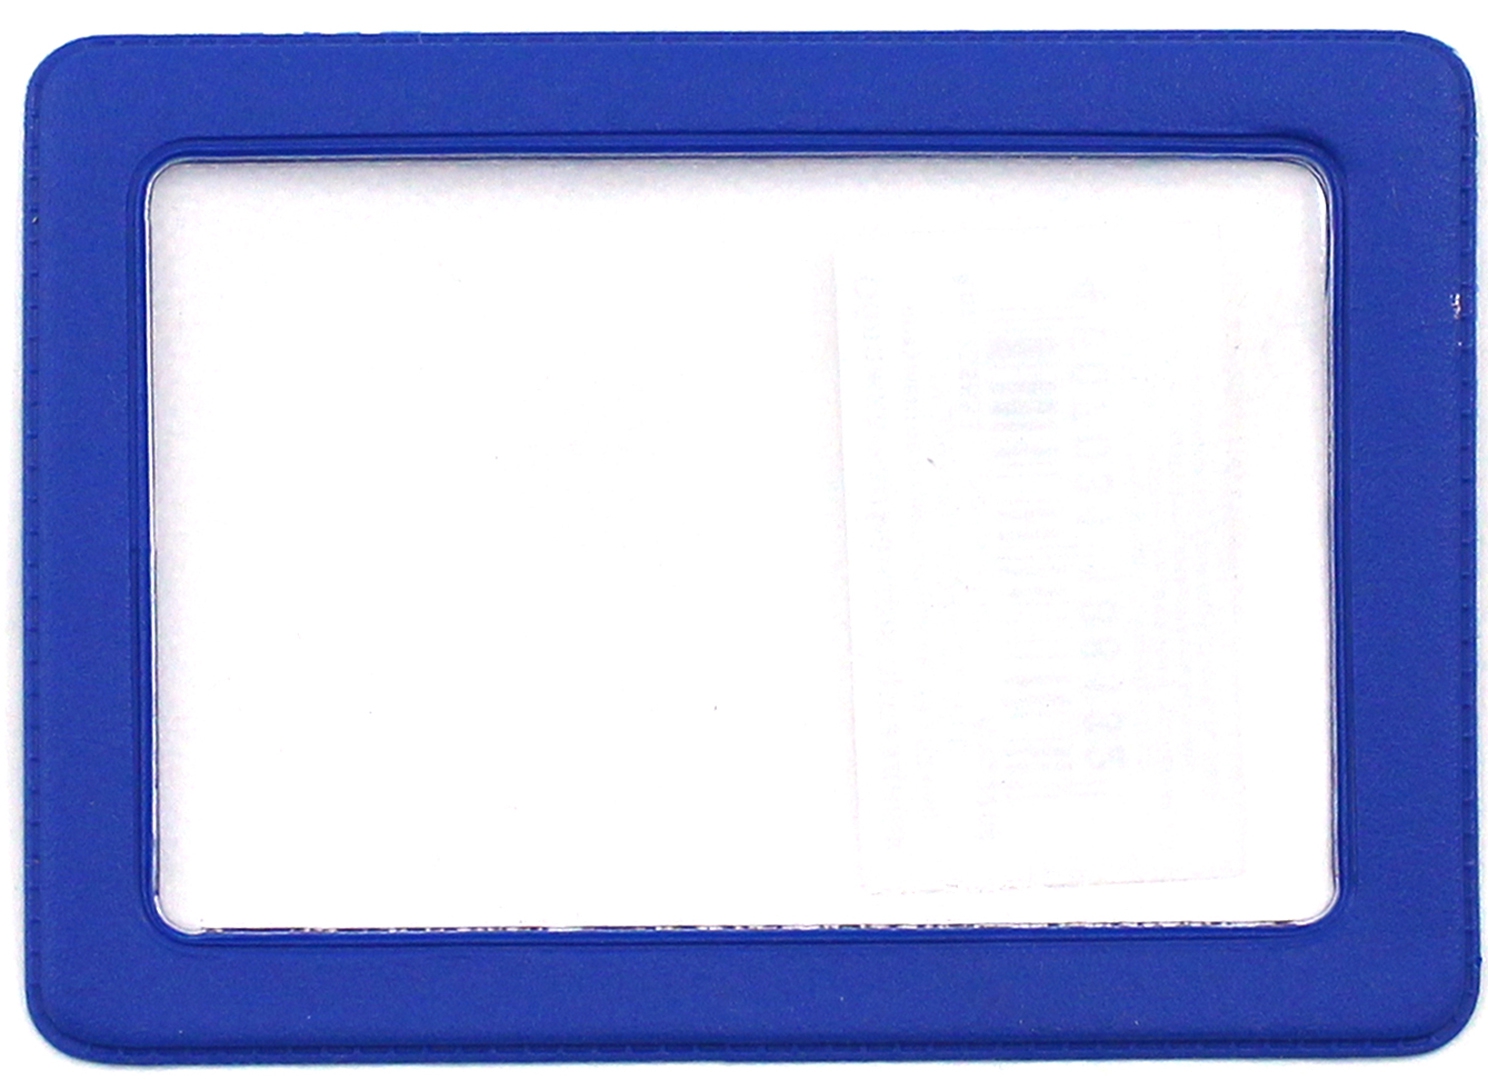 Иллюстрация 1 из 7 для Обложка-карман для проездных документов, 69х92 мм, в ассортименте | Лабиринт - канцтовы. Источник: Лабиринт